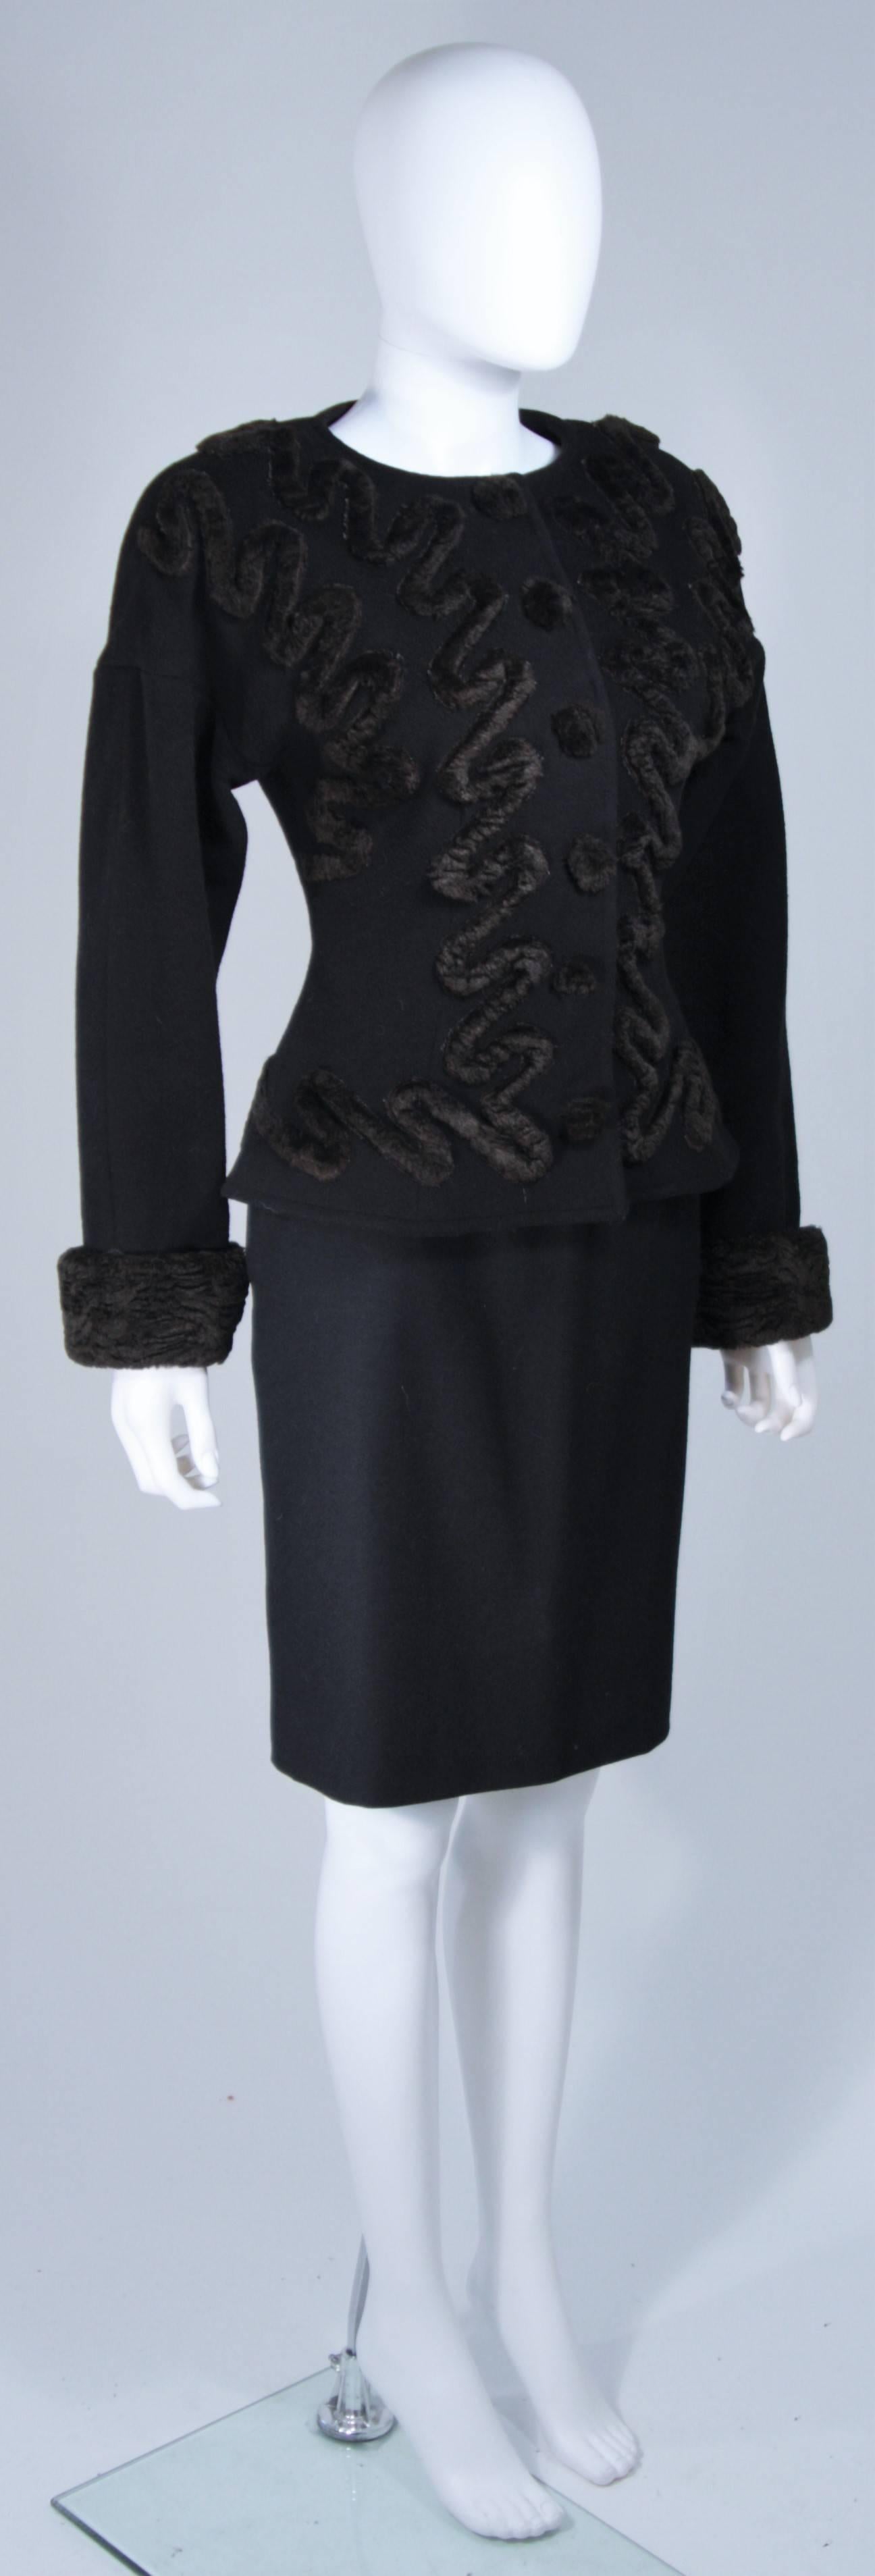 FENDI Circa 1980's Black Wool Skirt Suit with Faux Fur Applique Size 40 For Sale 1